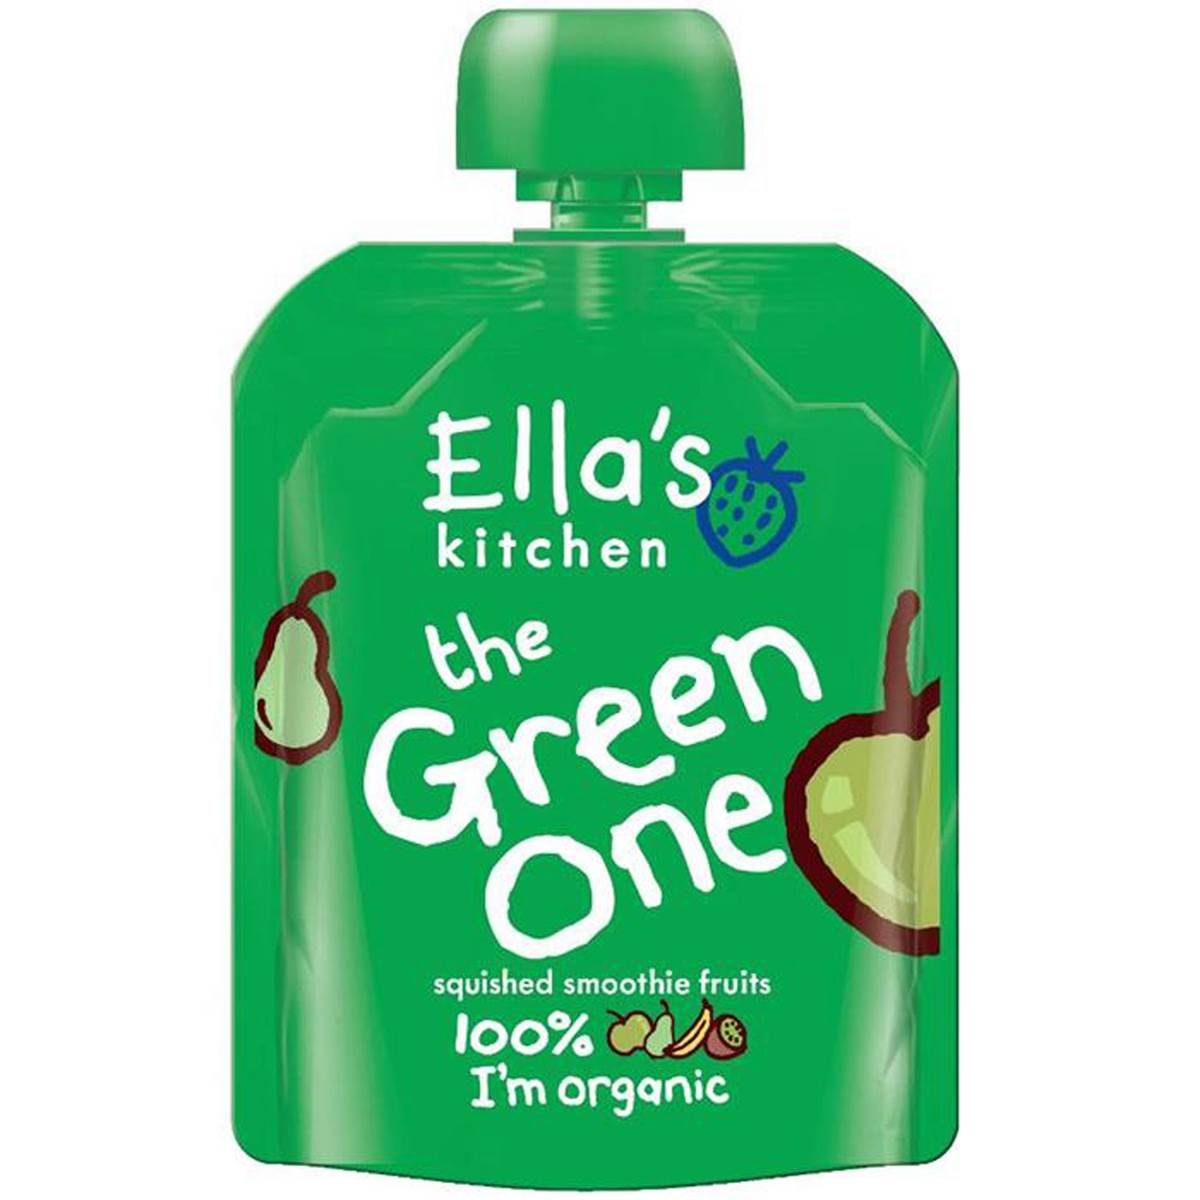 Ellas Kitchen The Green One - 90g